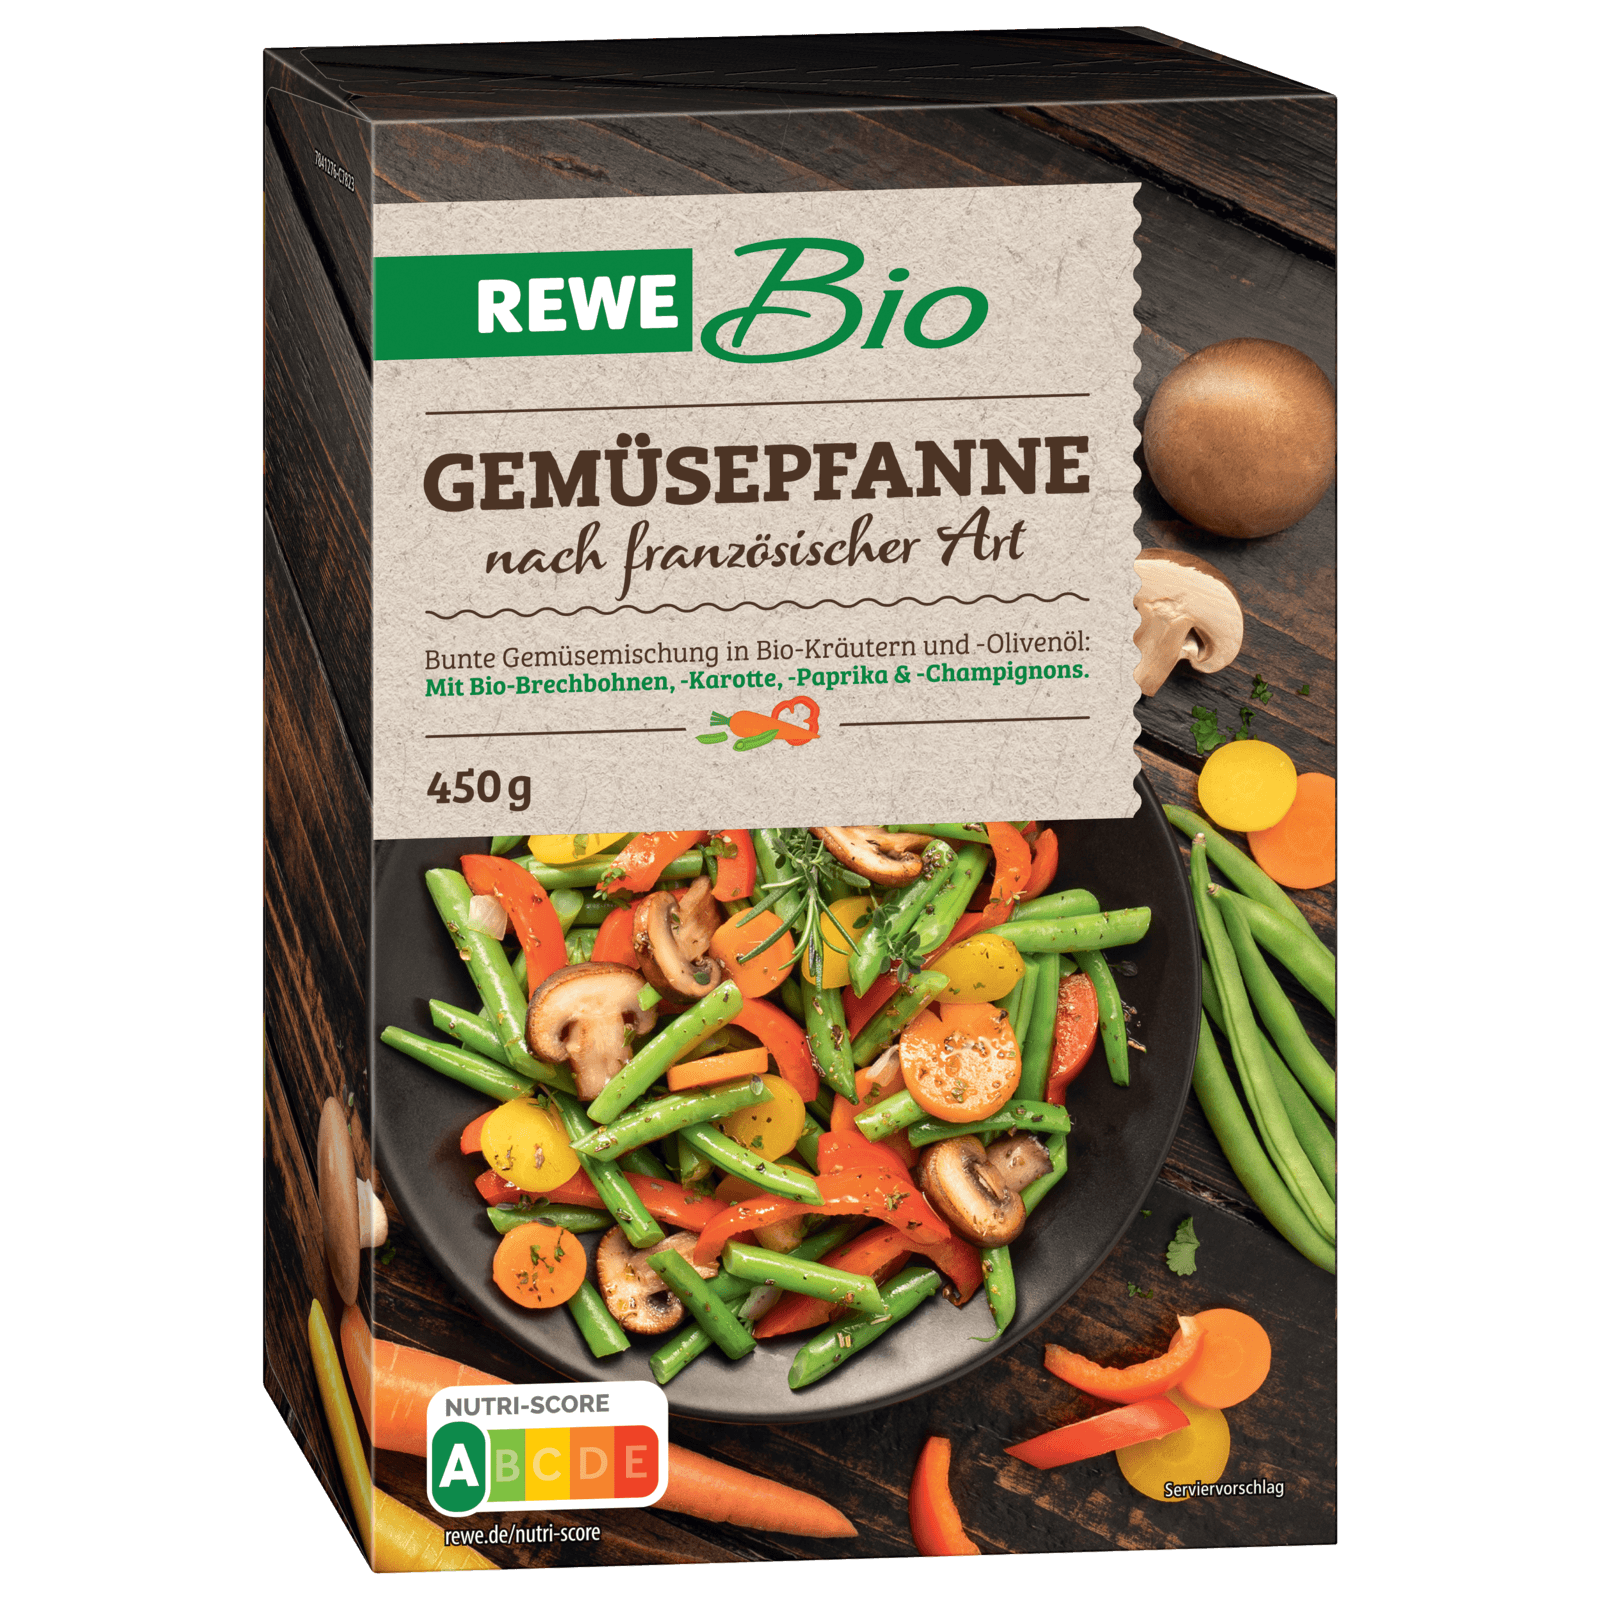 REWE Bio Gemüsepfanne nach Französischer Art 450g